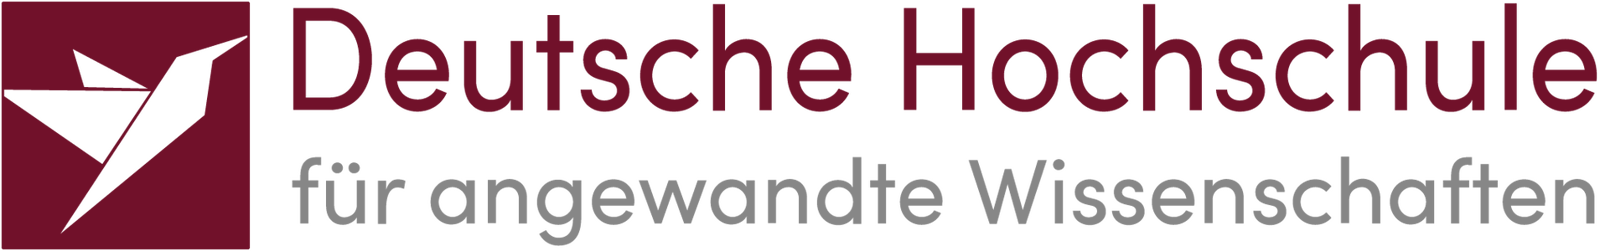 Professur im Fachbereich Betriebswirtschaft und Management - Deutsche Hochschule für angewandte Wissenschaften - Logo